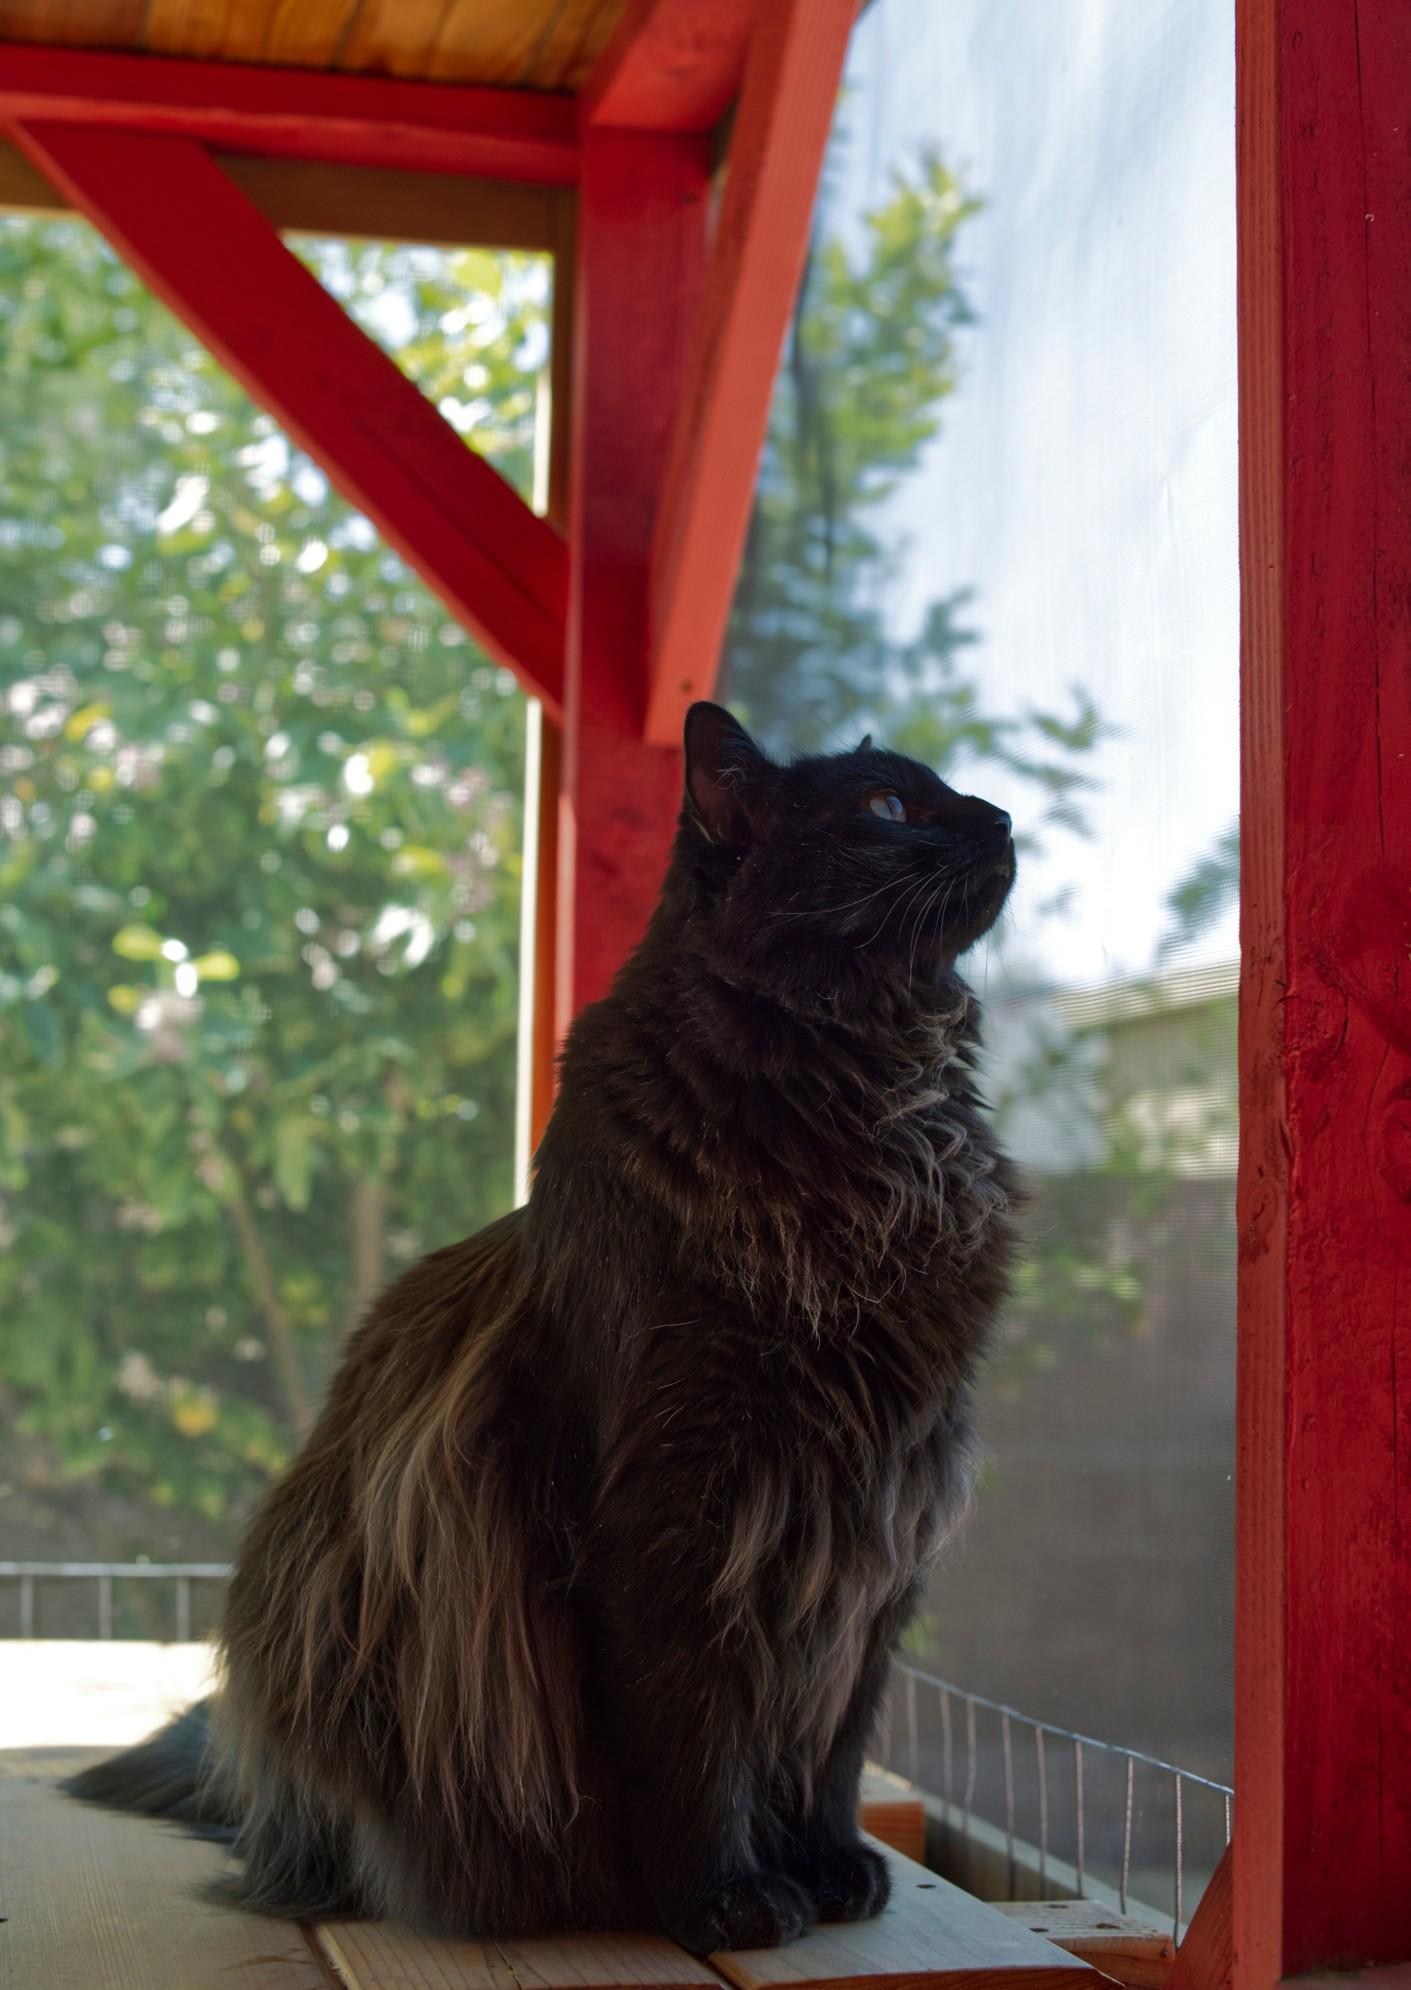 A black cat sitting in a screened-in "catio" space.